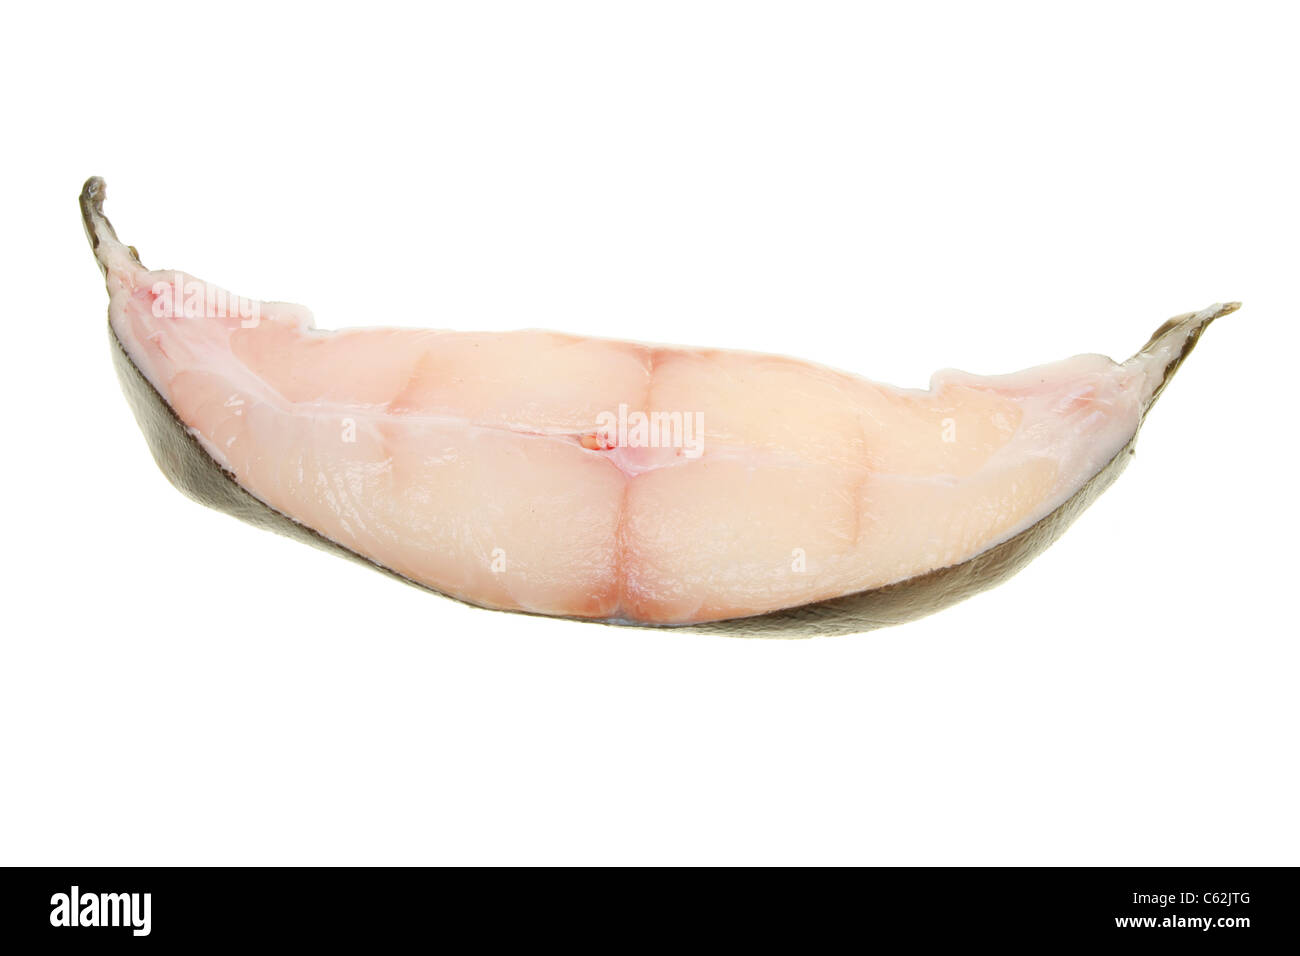 Crudo pesce hallibut steak isolato su bianco Foto Stock